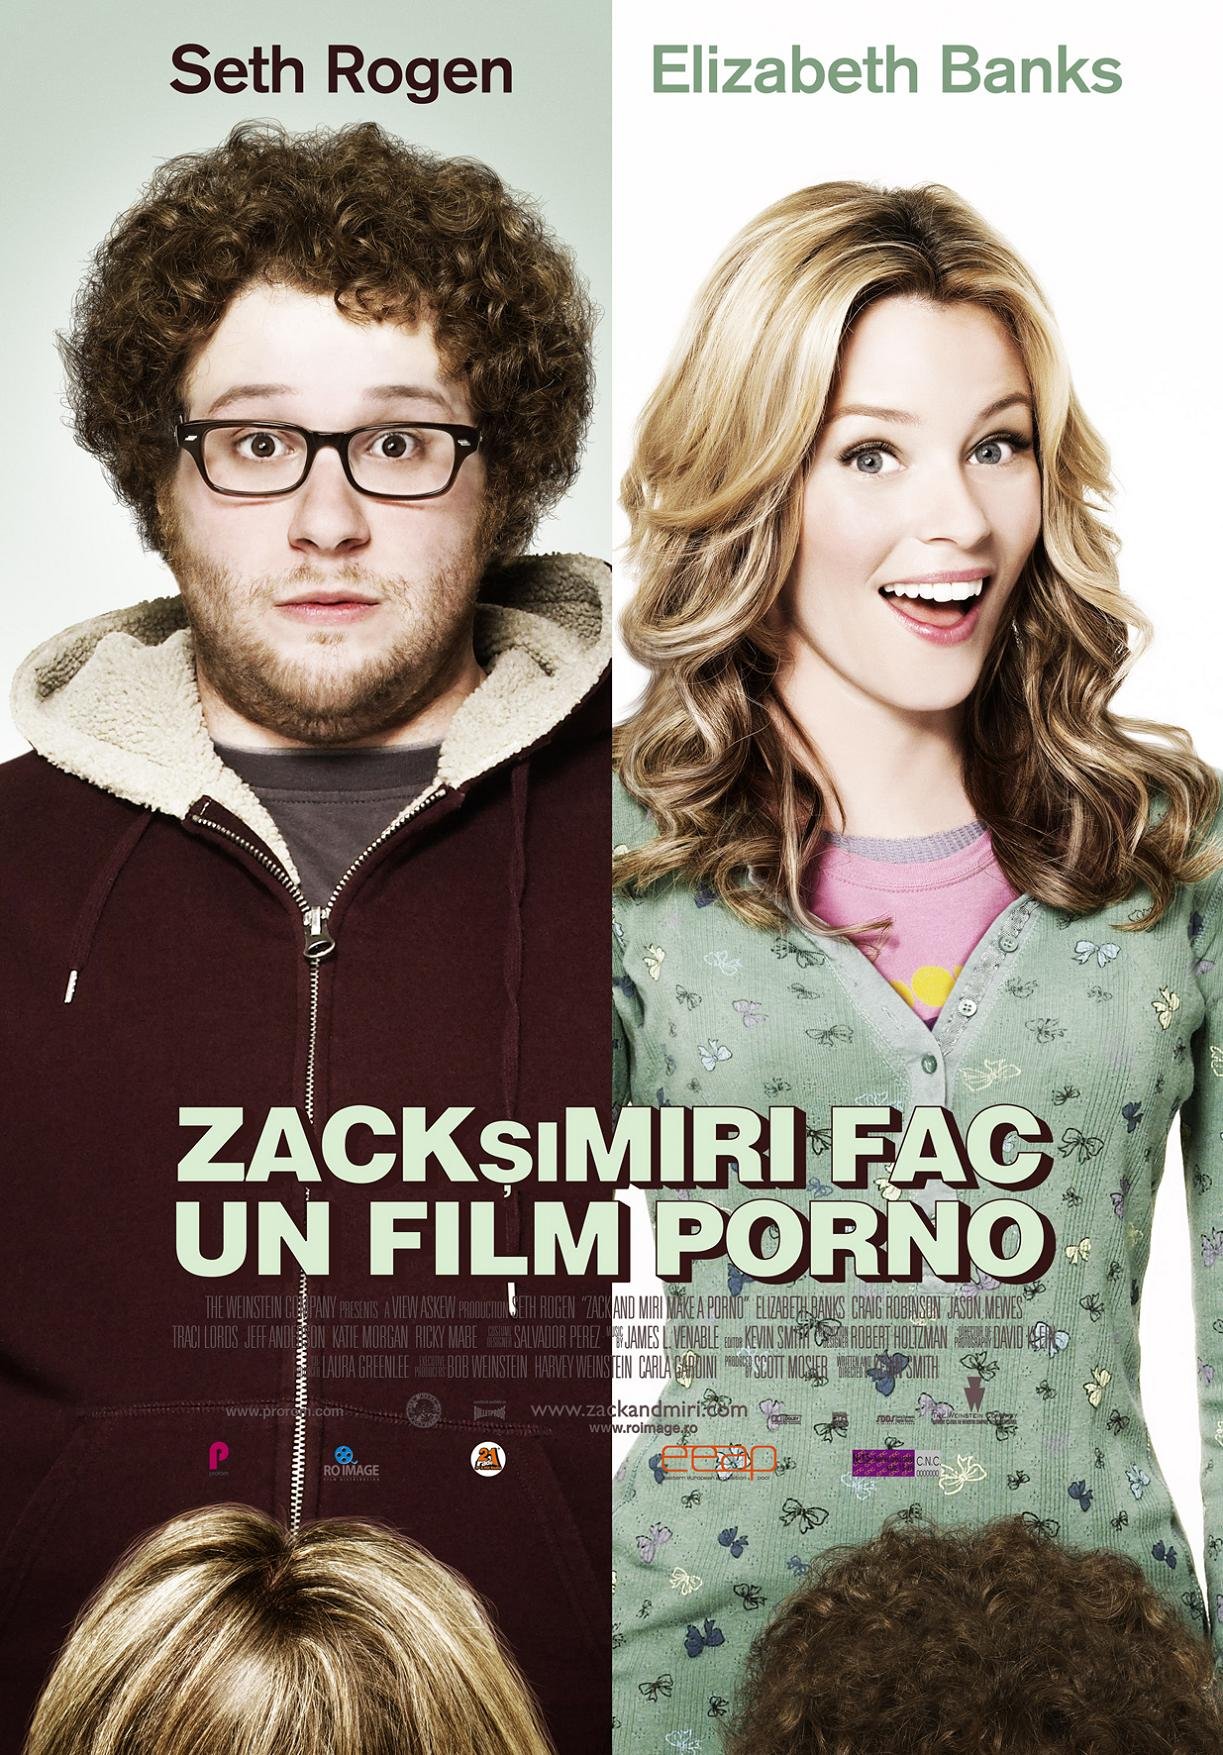 Zack and Miri Make a Porno (2008) poster.